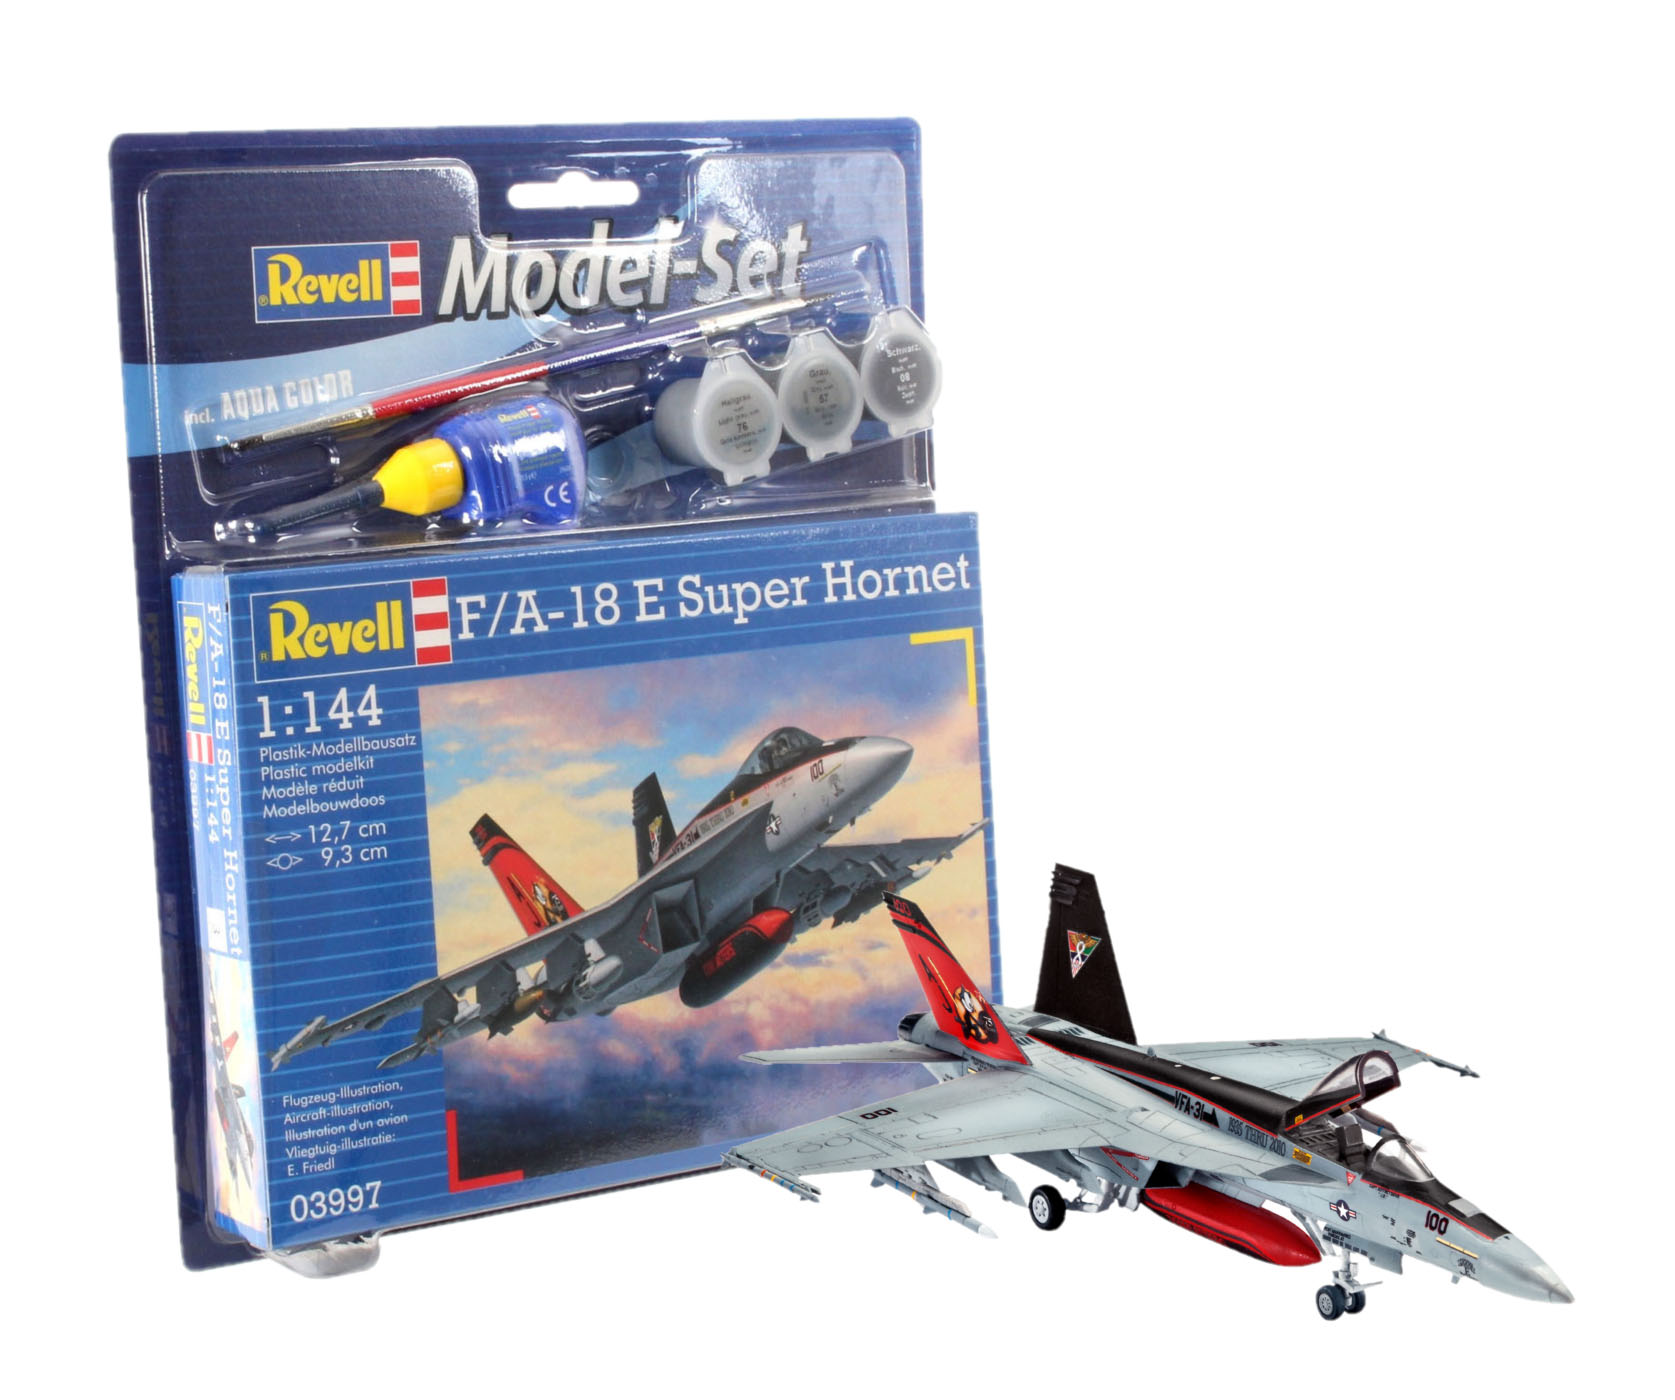 Revell 1:144 Scale F/A-18E Super Hornet Plastic Kit